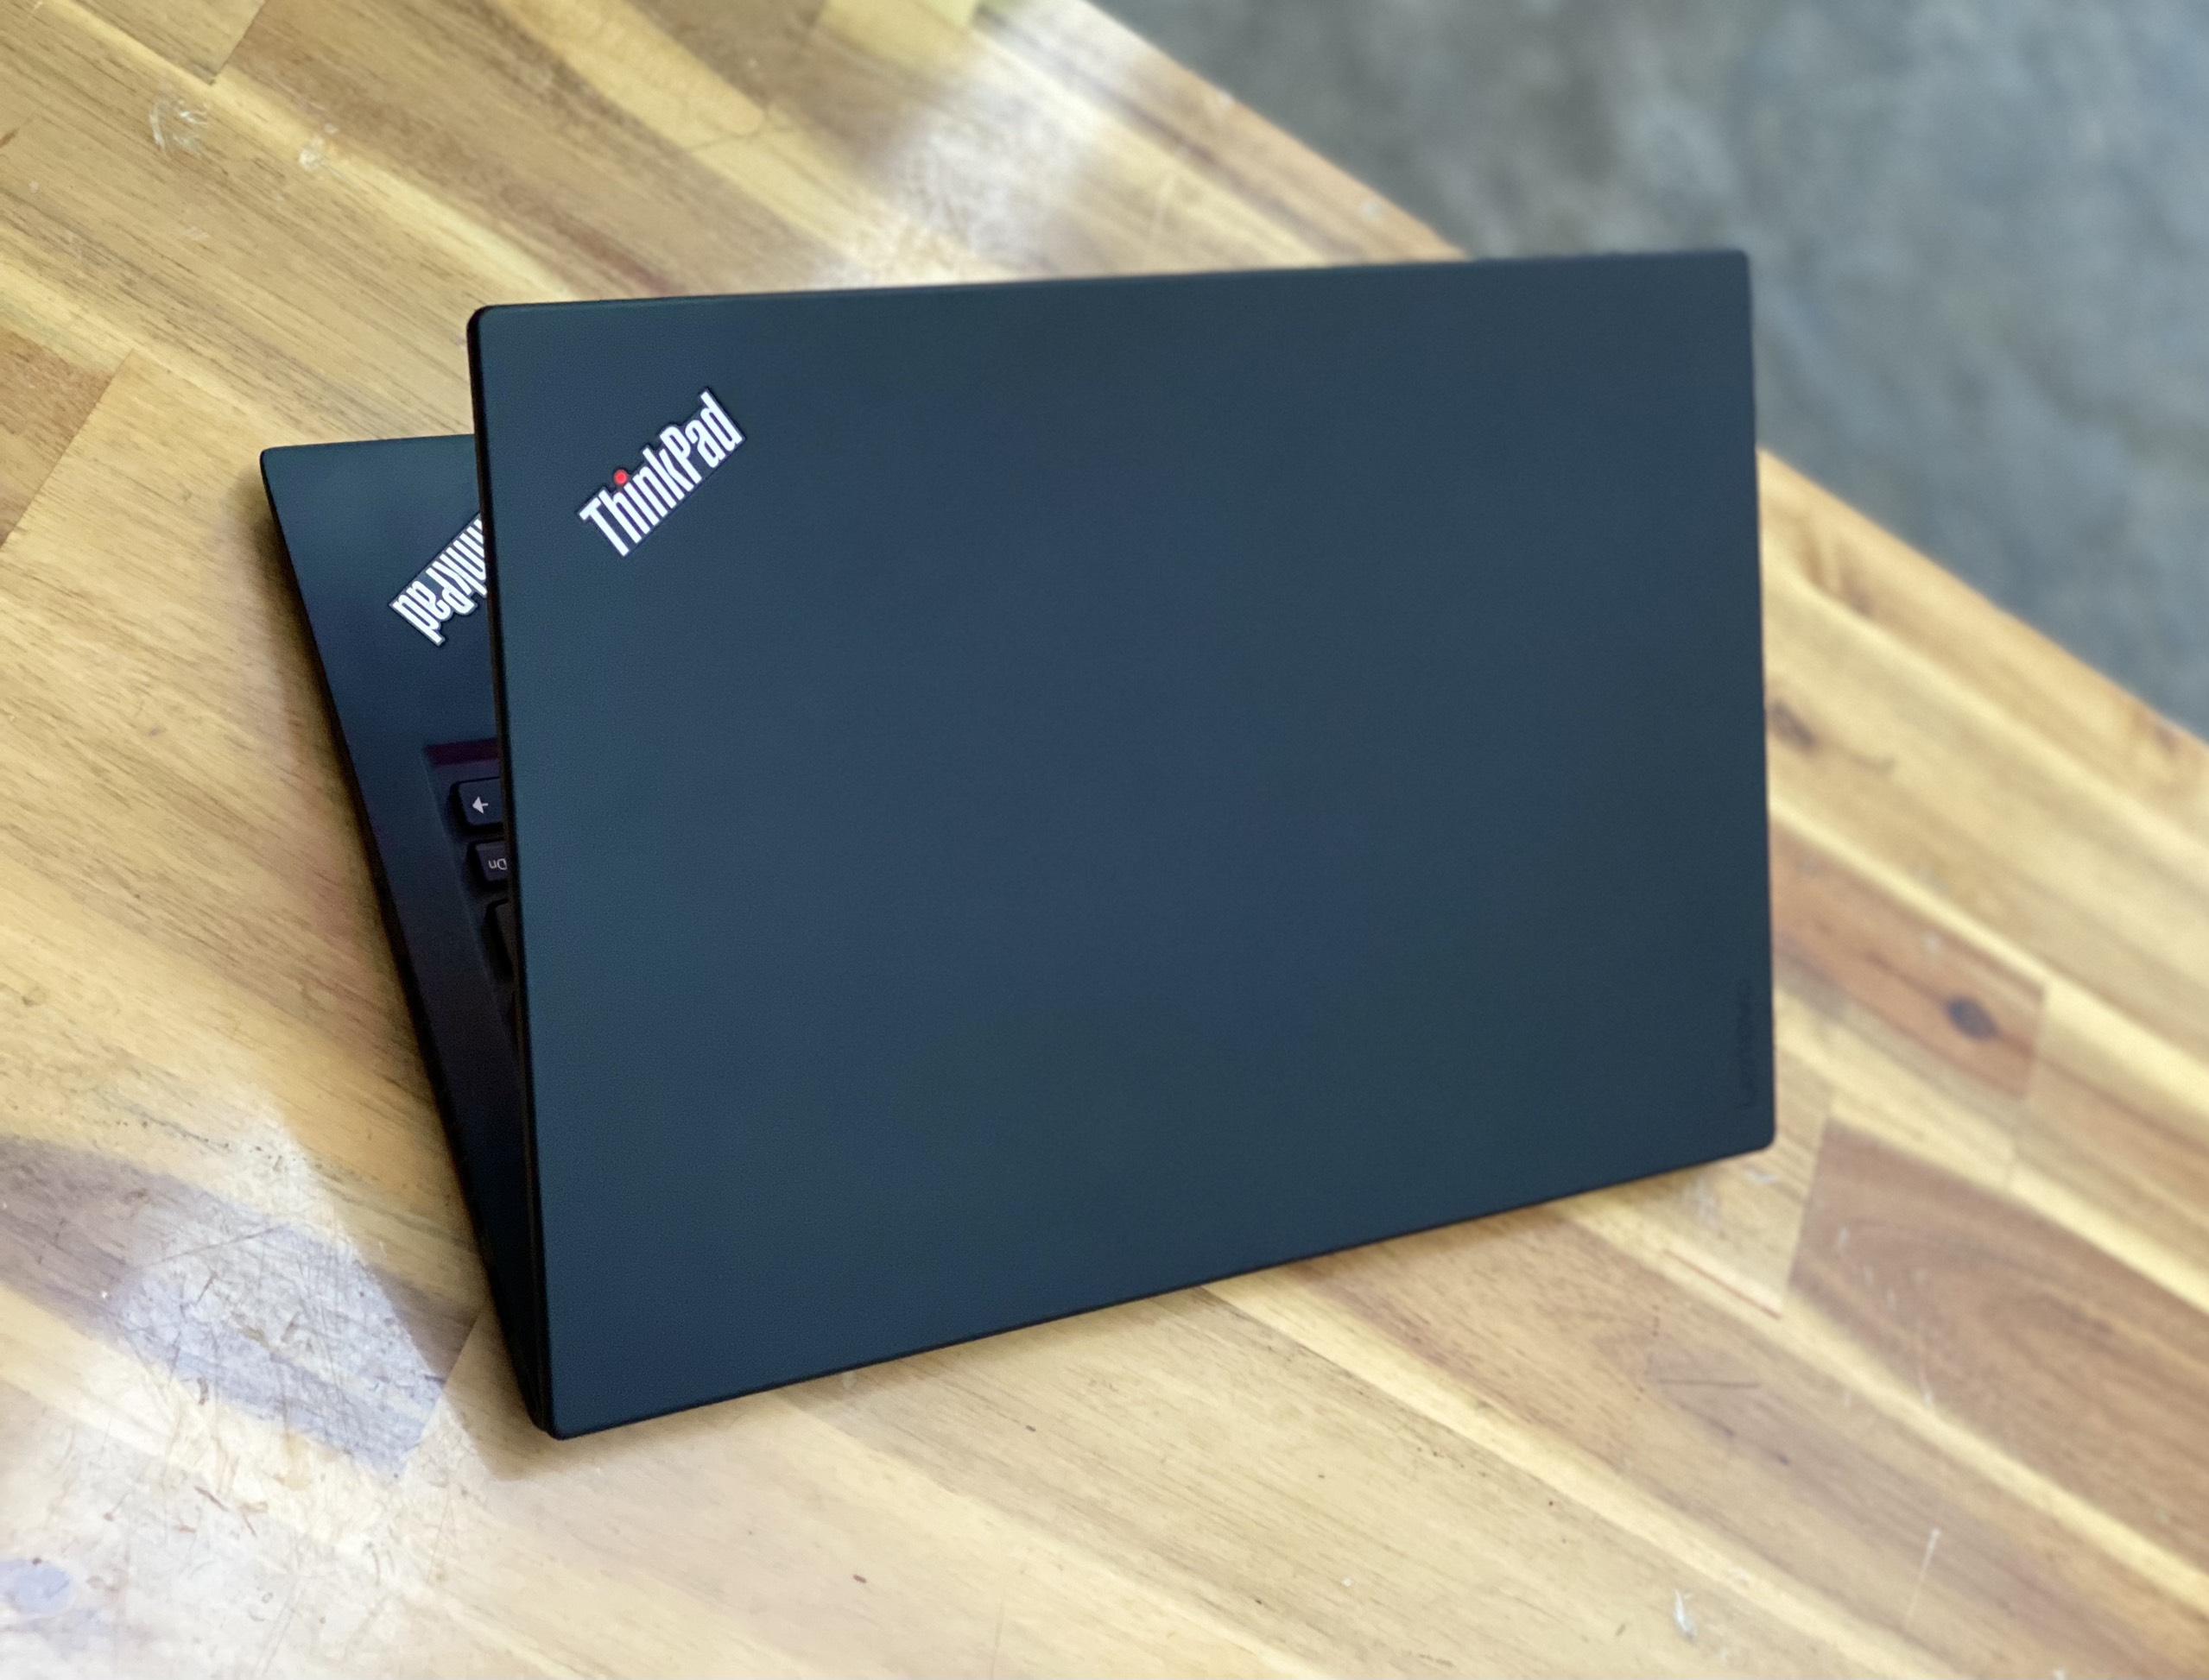 Laptop Lenovo Thinkpad X1 Carbon Gen 5/ i7 6500U/ 8G/ SSD256/ Viền Mỏng/ Full HD/ Chuẩn Doanh Nhân/ Giá rẻ2